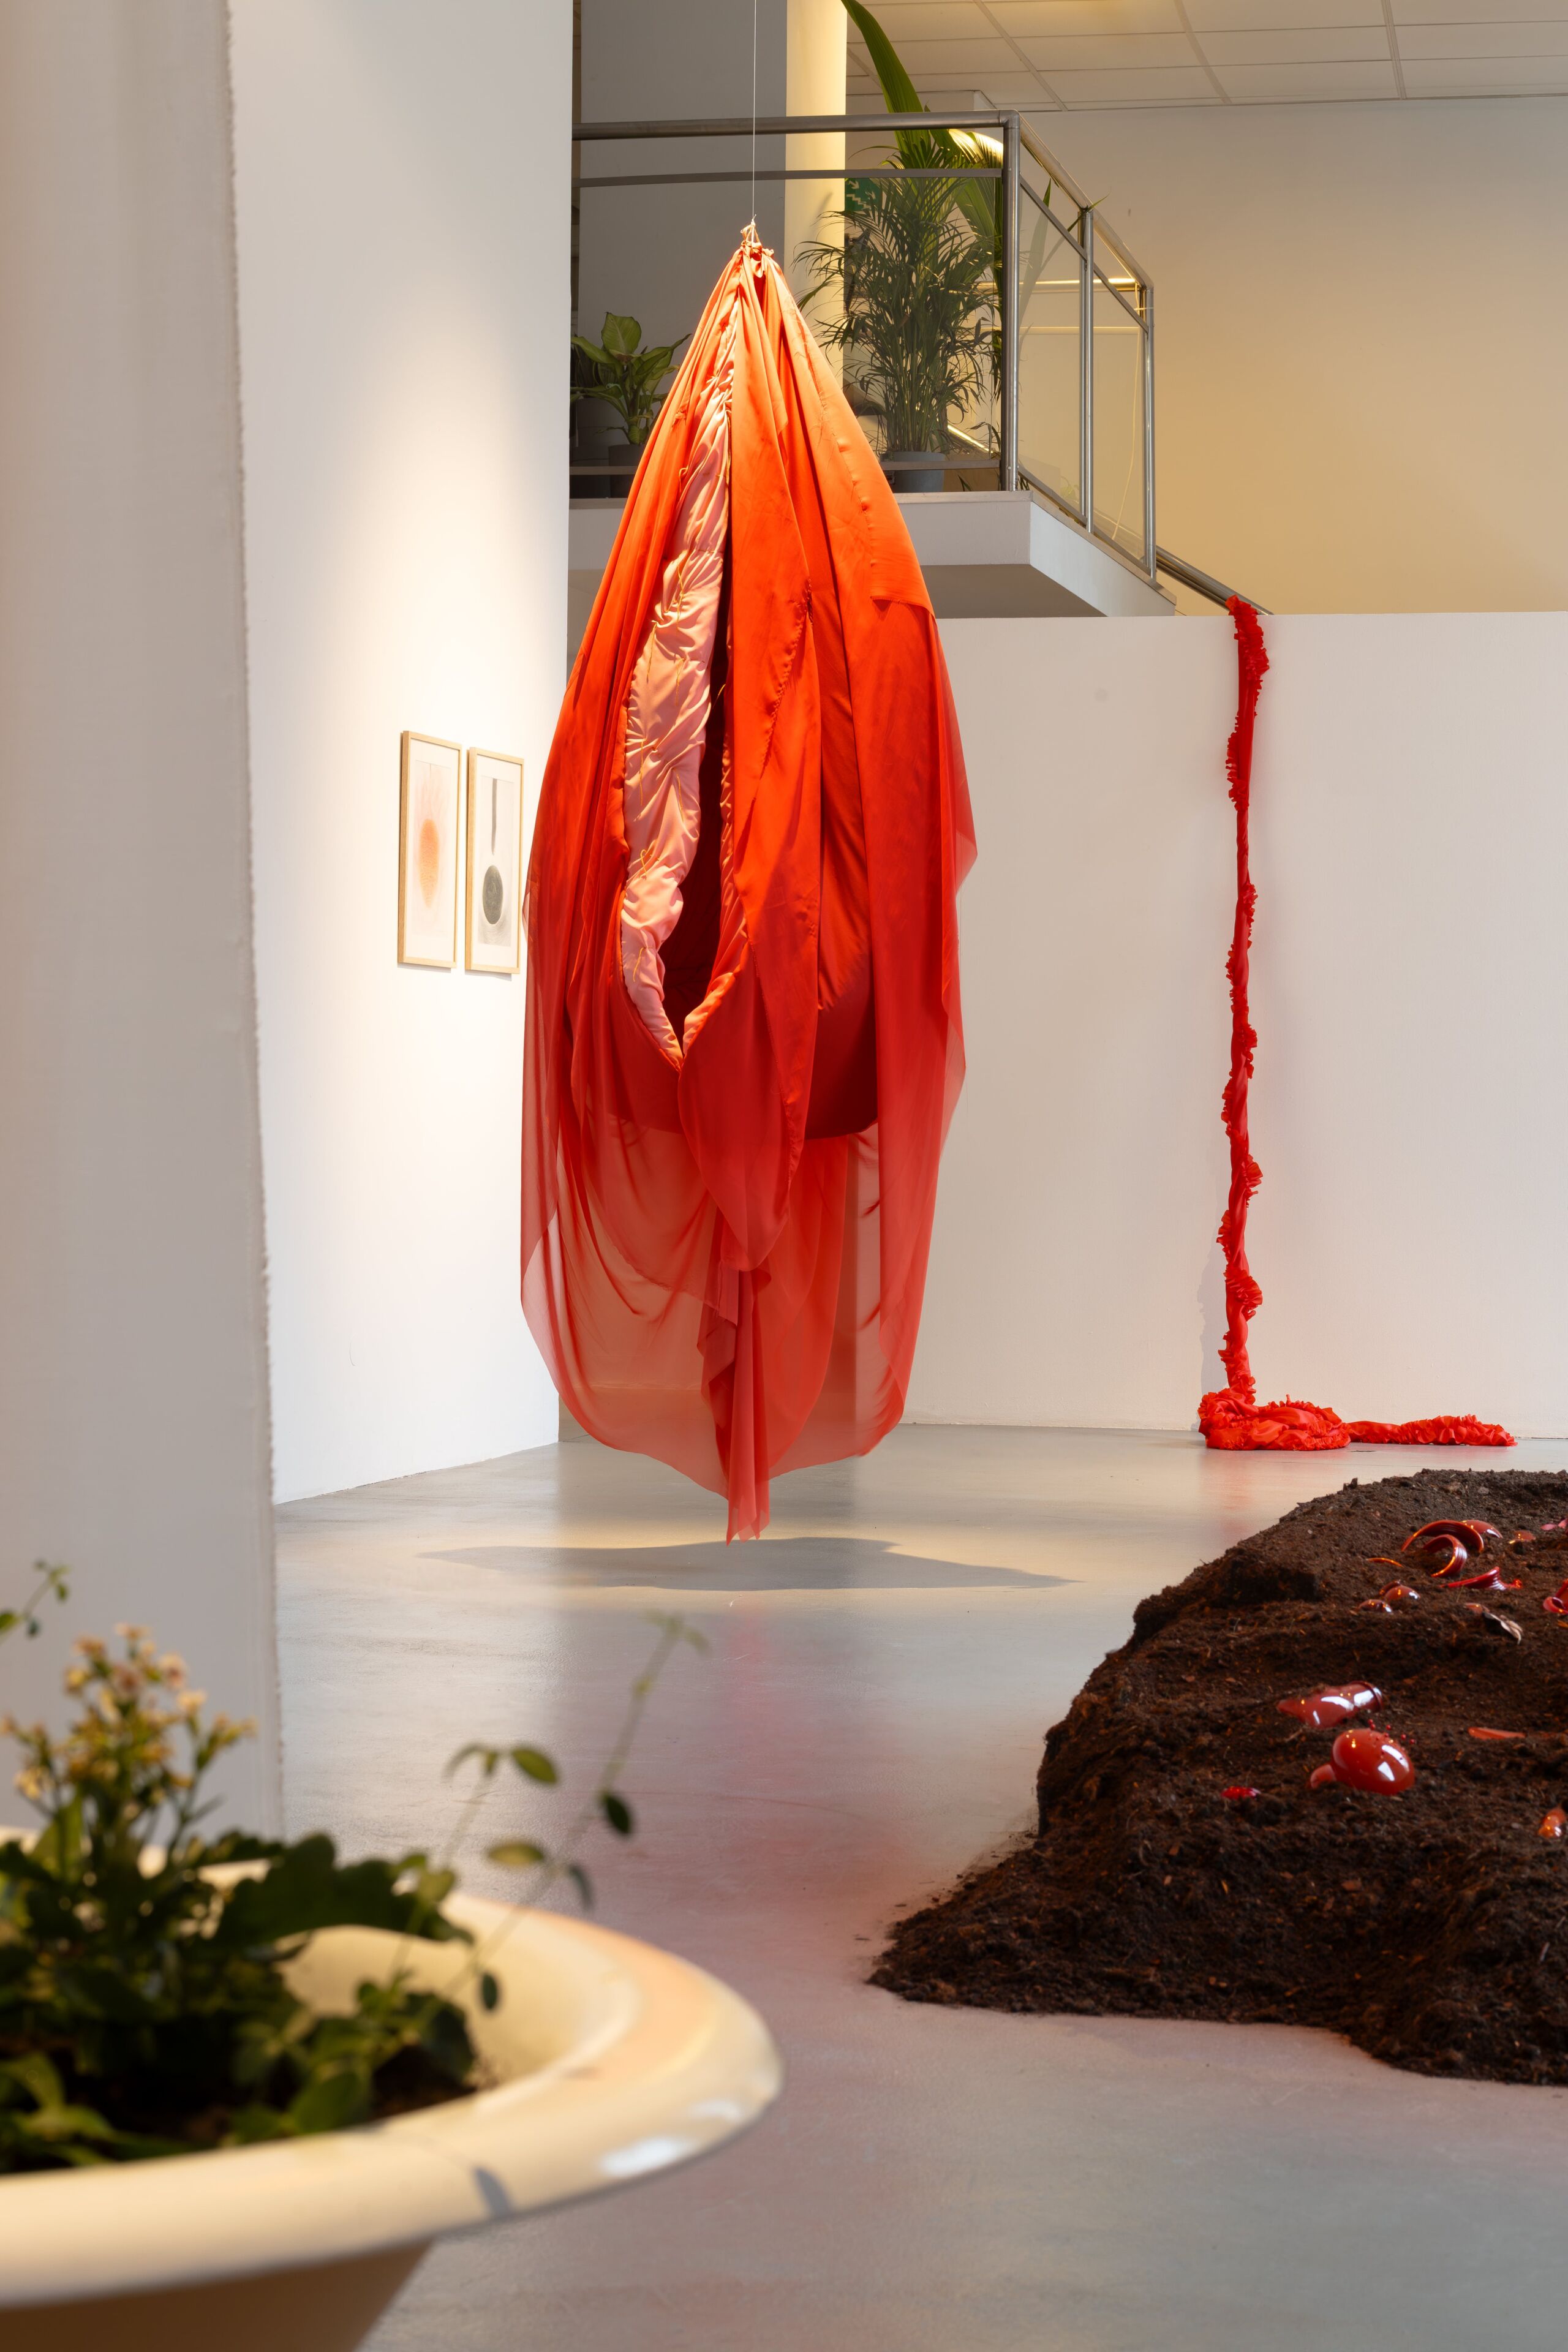 Duży, czerwony obiekt z materiału, przypominający waginę, zwisający nad podłogą w przestrzeni galerii. Na pierwszym planie, nieostry fragment starej wanny